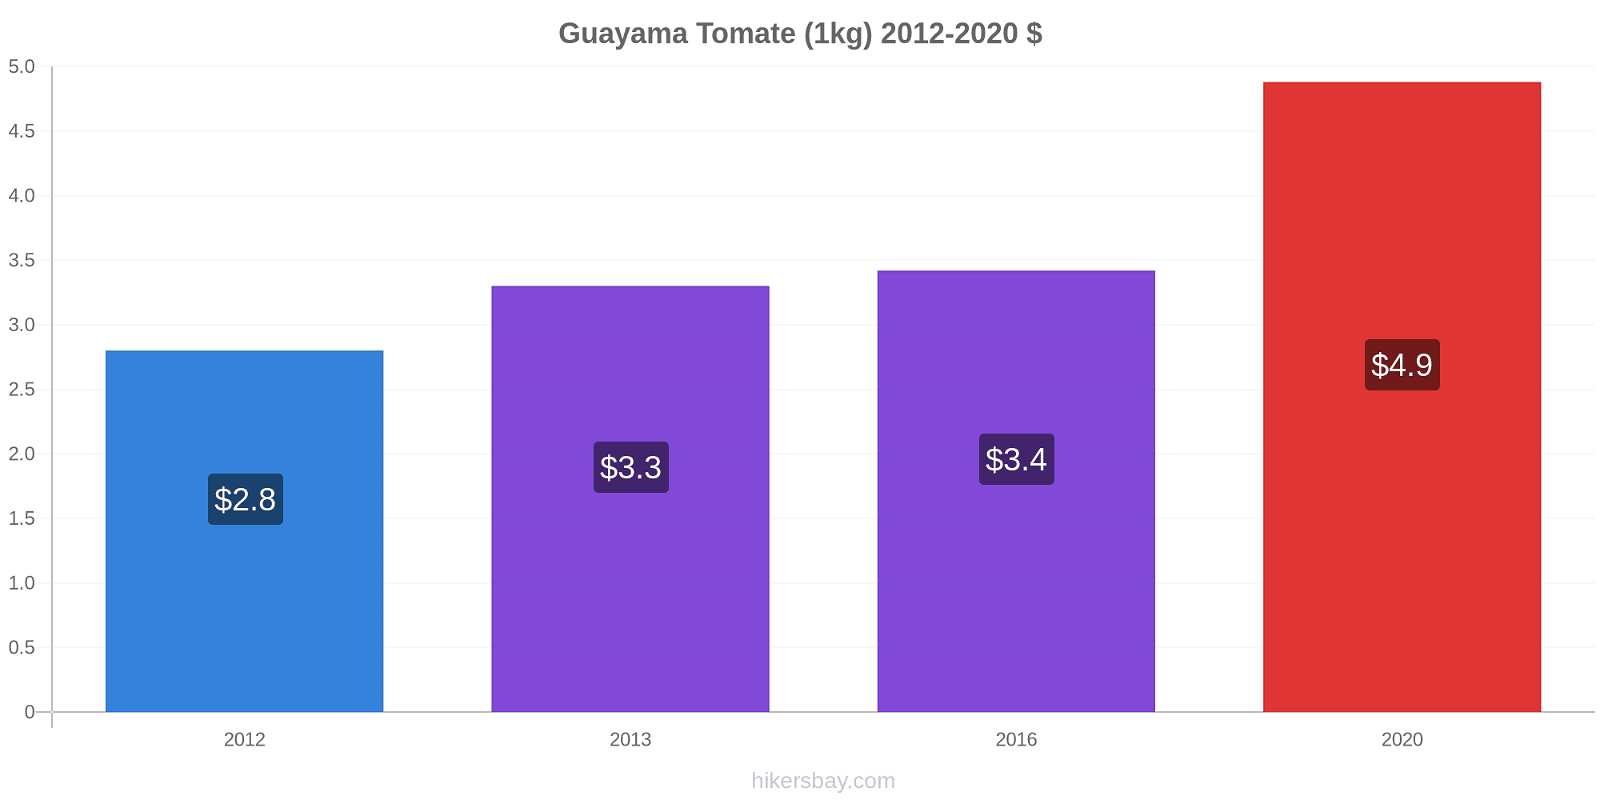 Guayama variação de preço Tomate (1kg) hikersbay.com